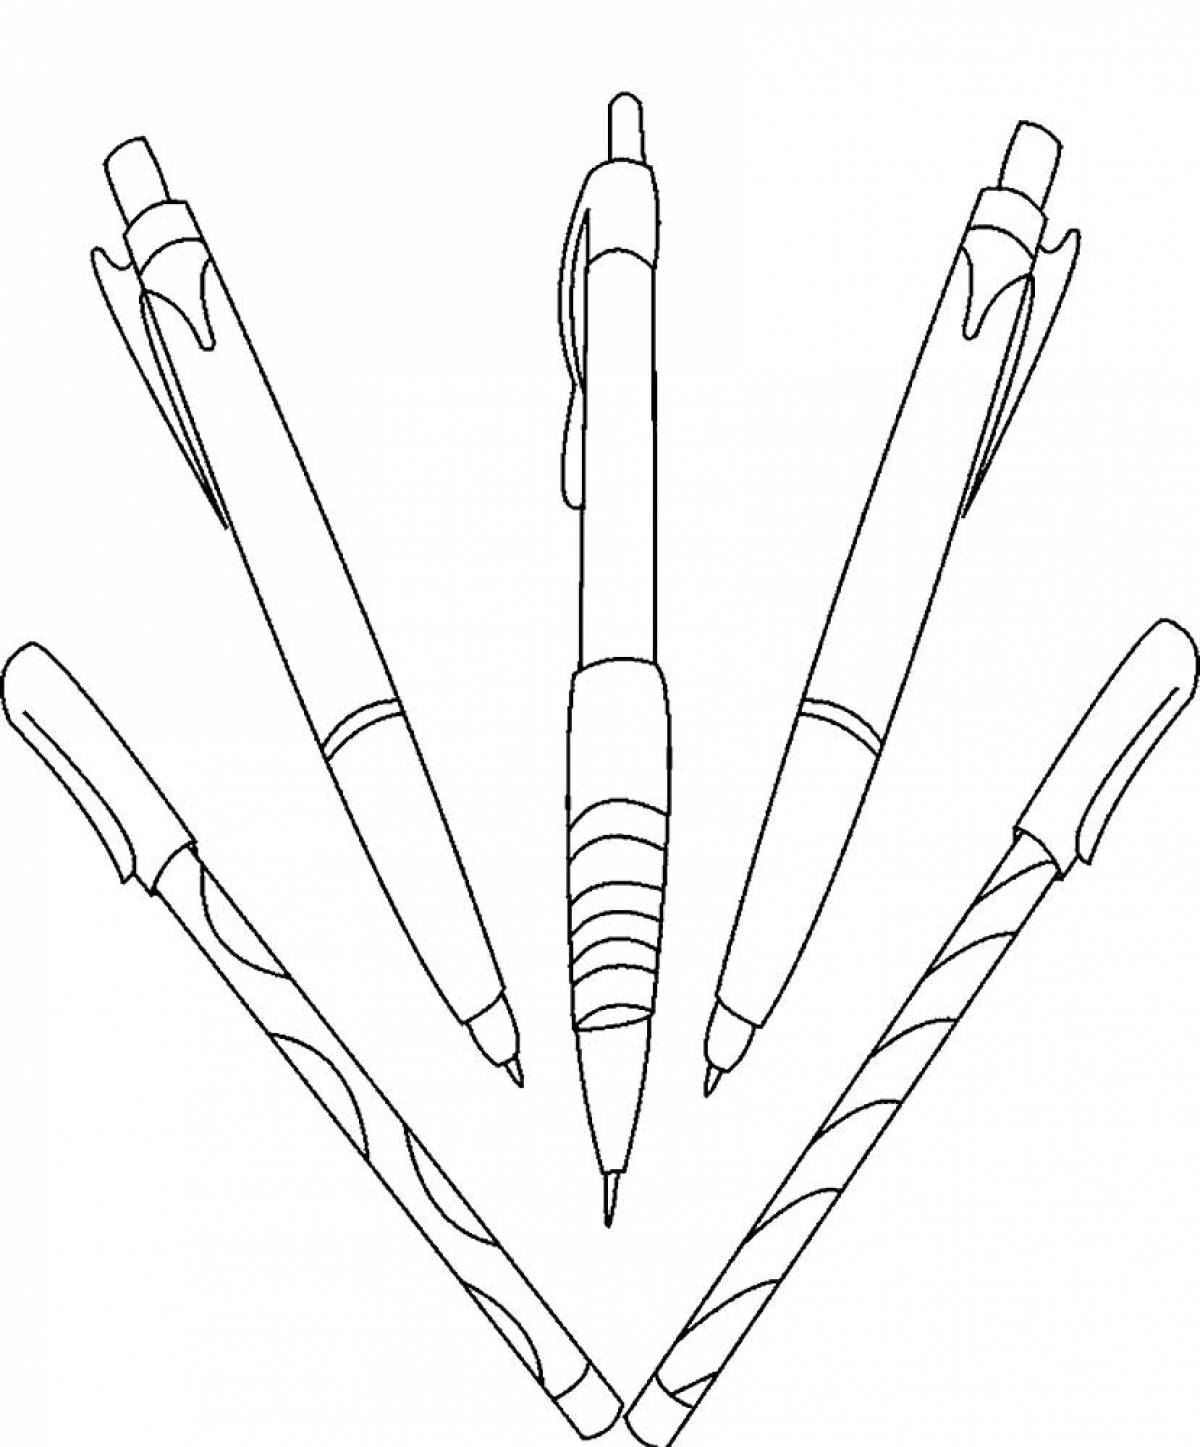 Ручки